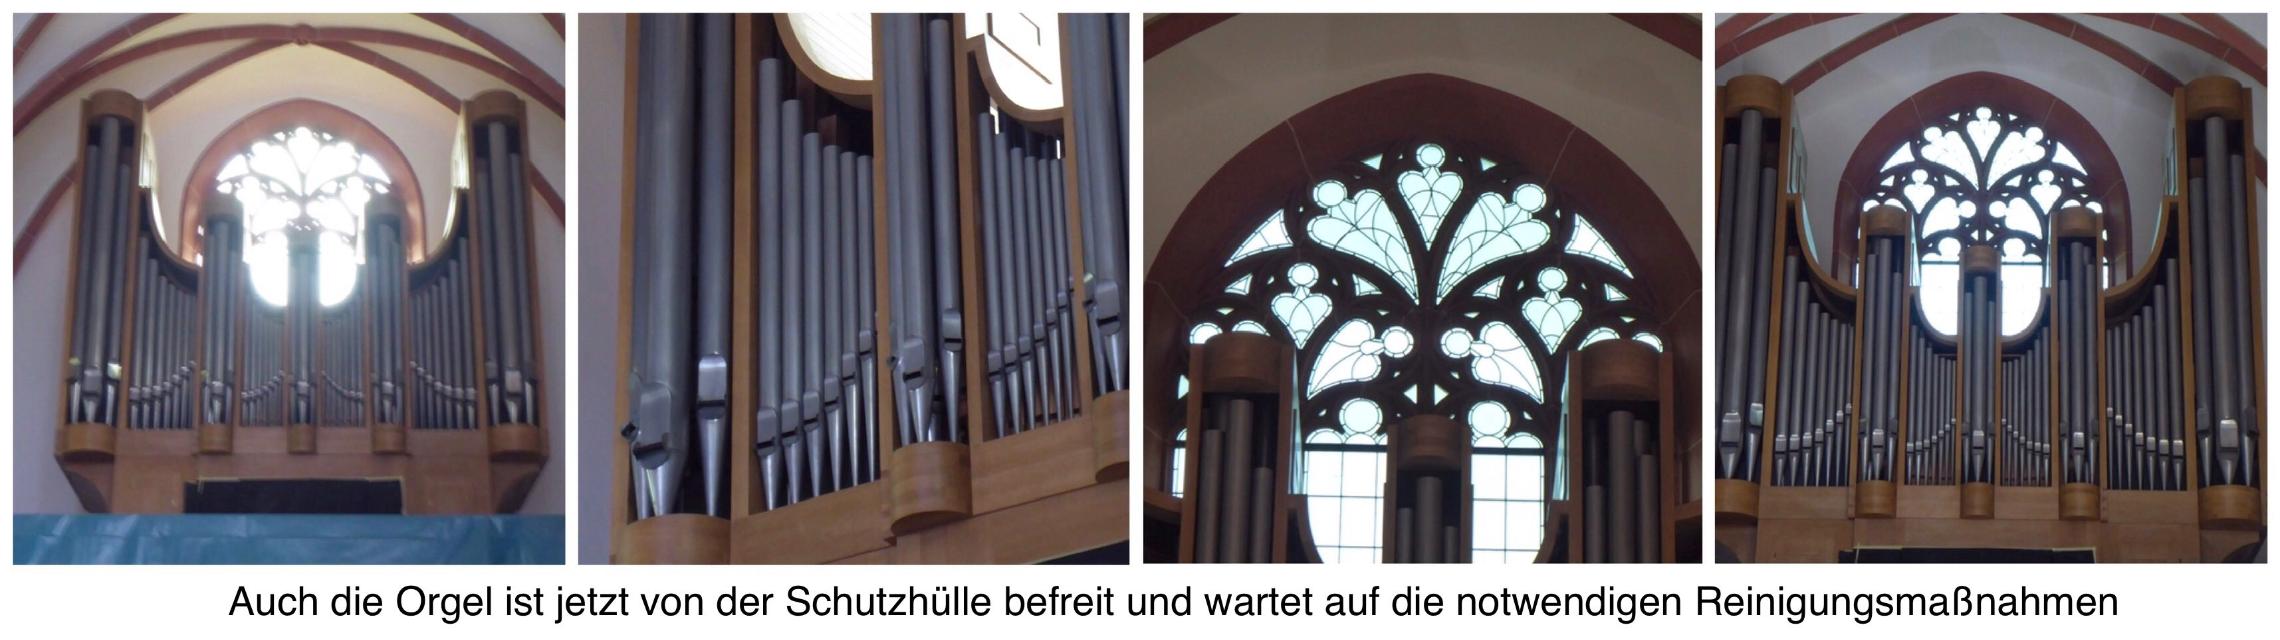 c.1_Orgel_1717 (c) Brigitta Gebauer 2021